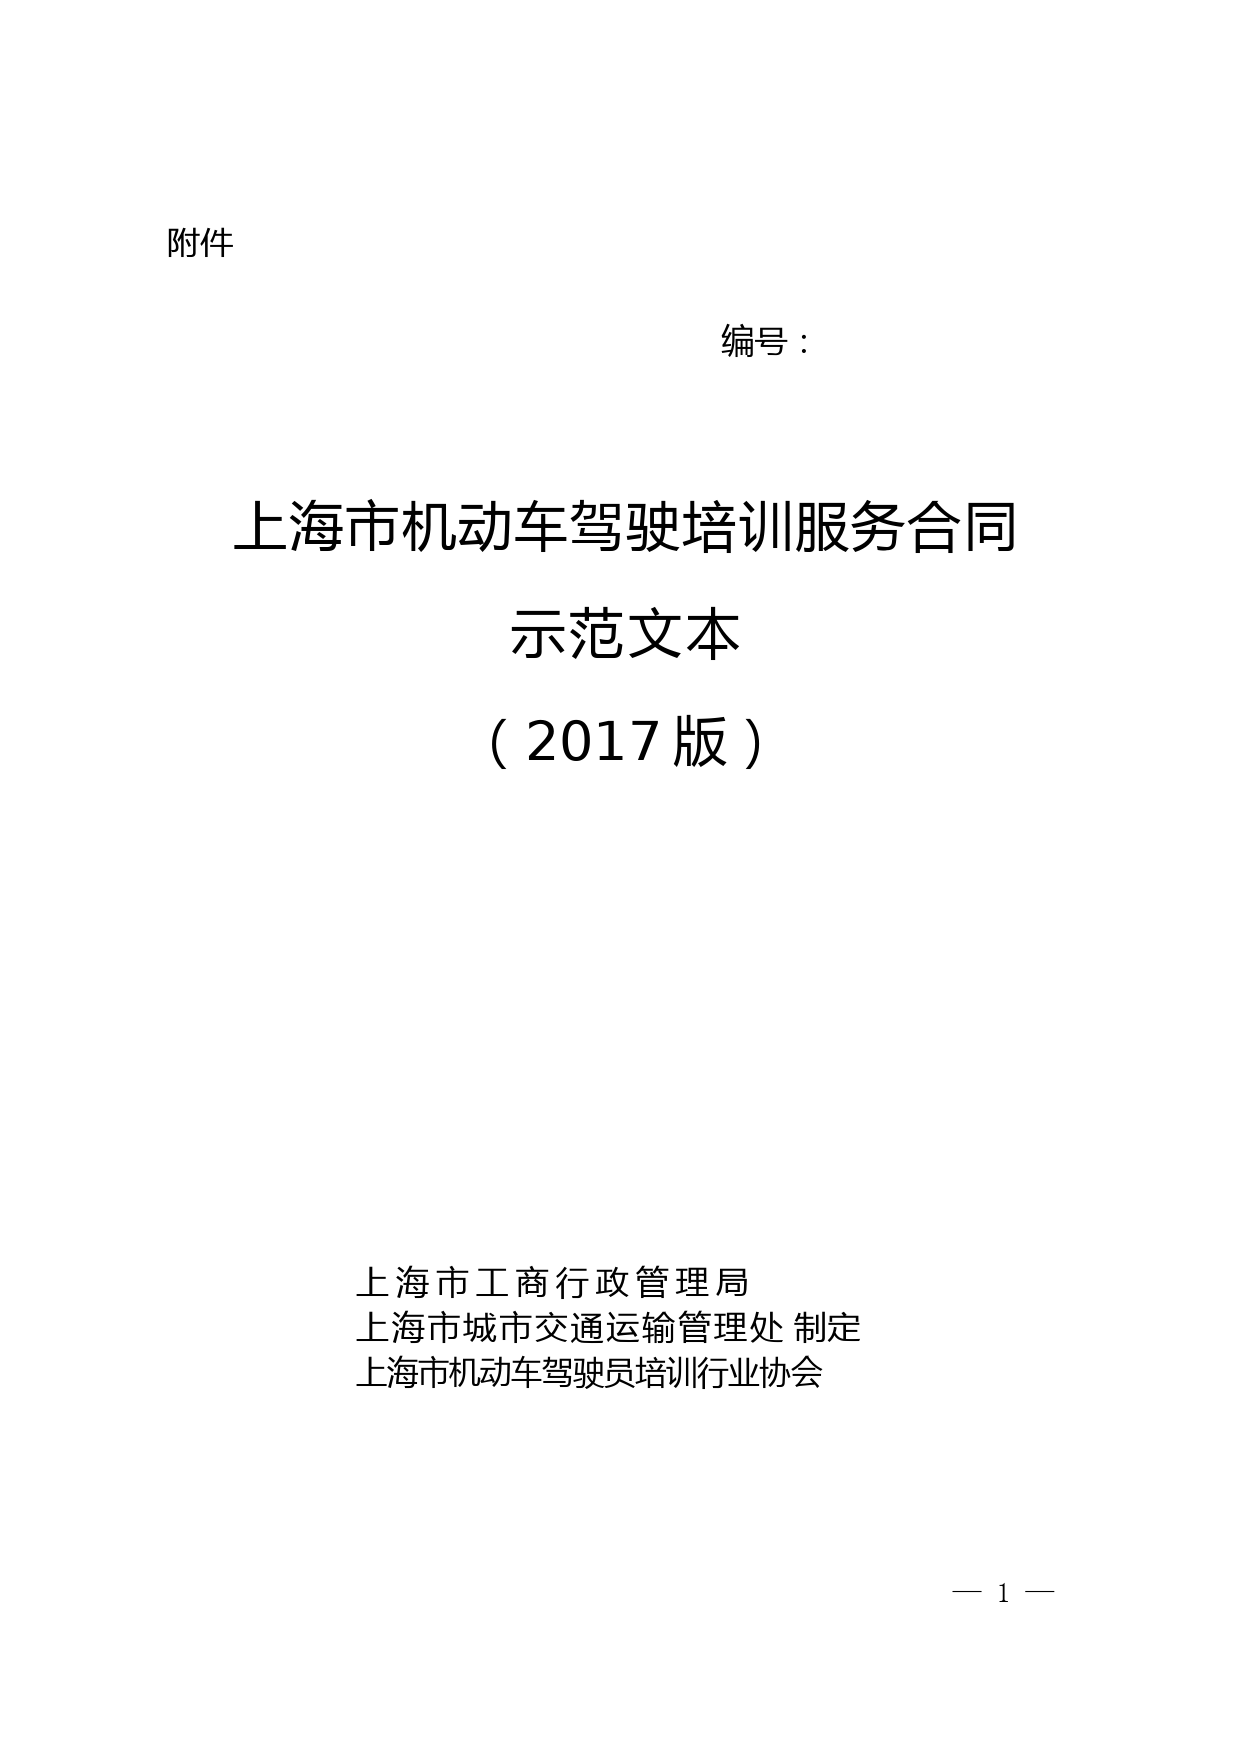 上海市机动车驾驶培训服务合同示范文本(2017版).doc